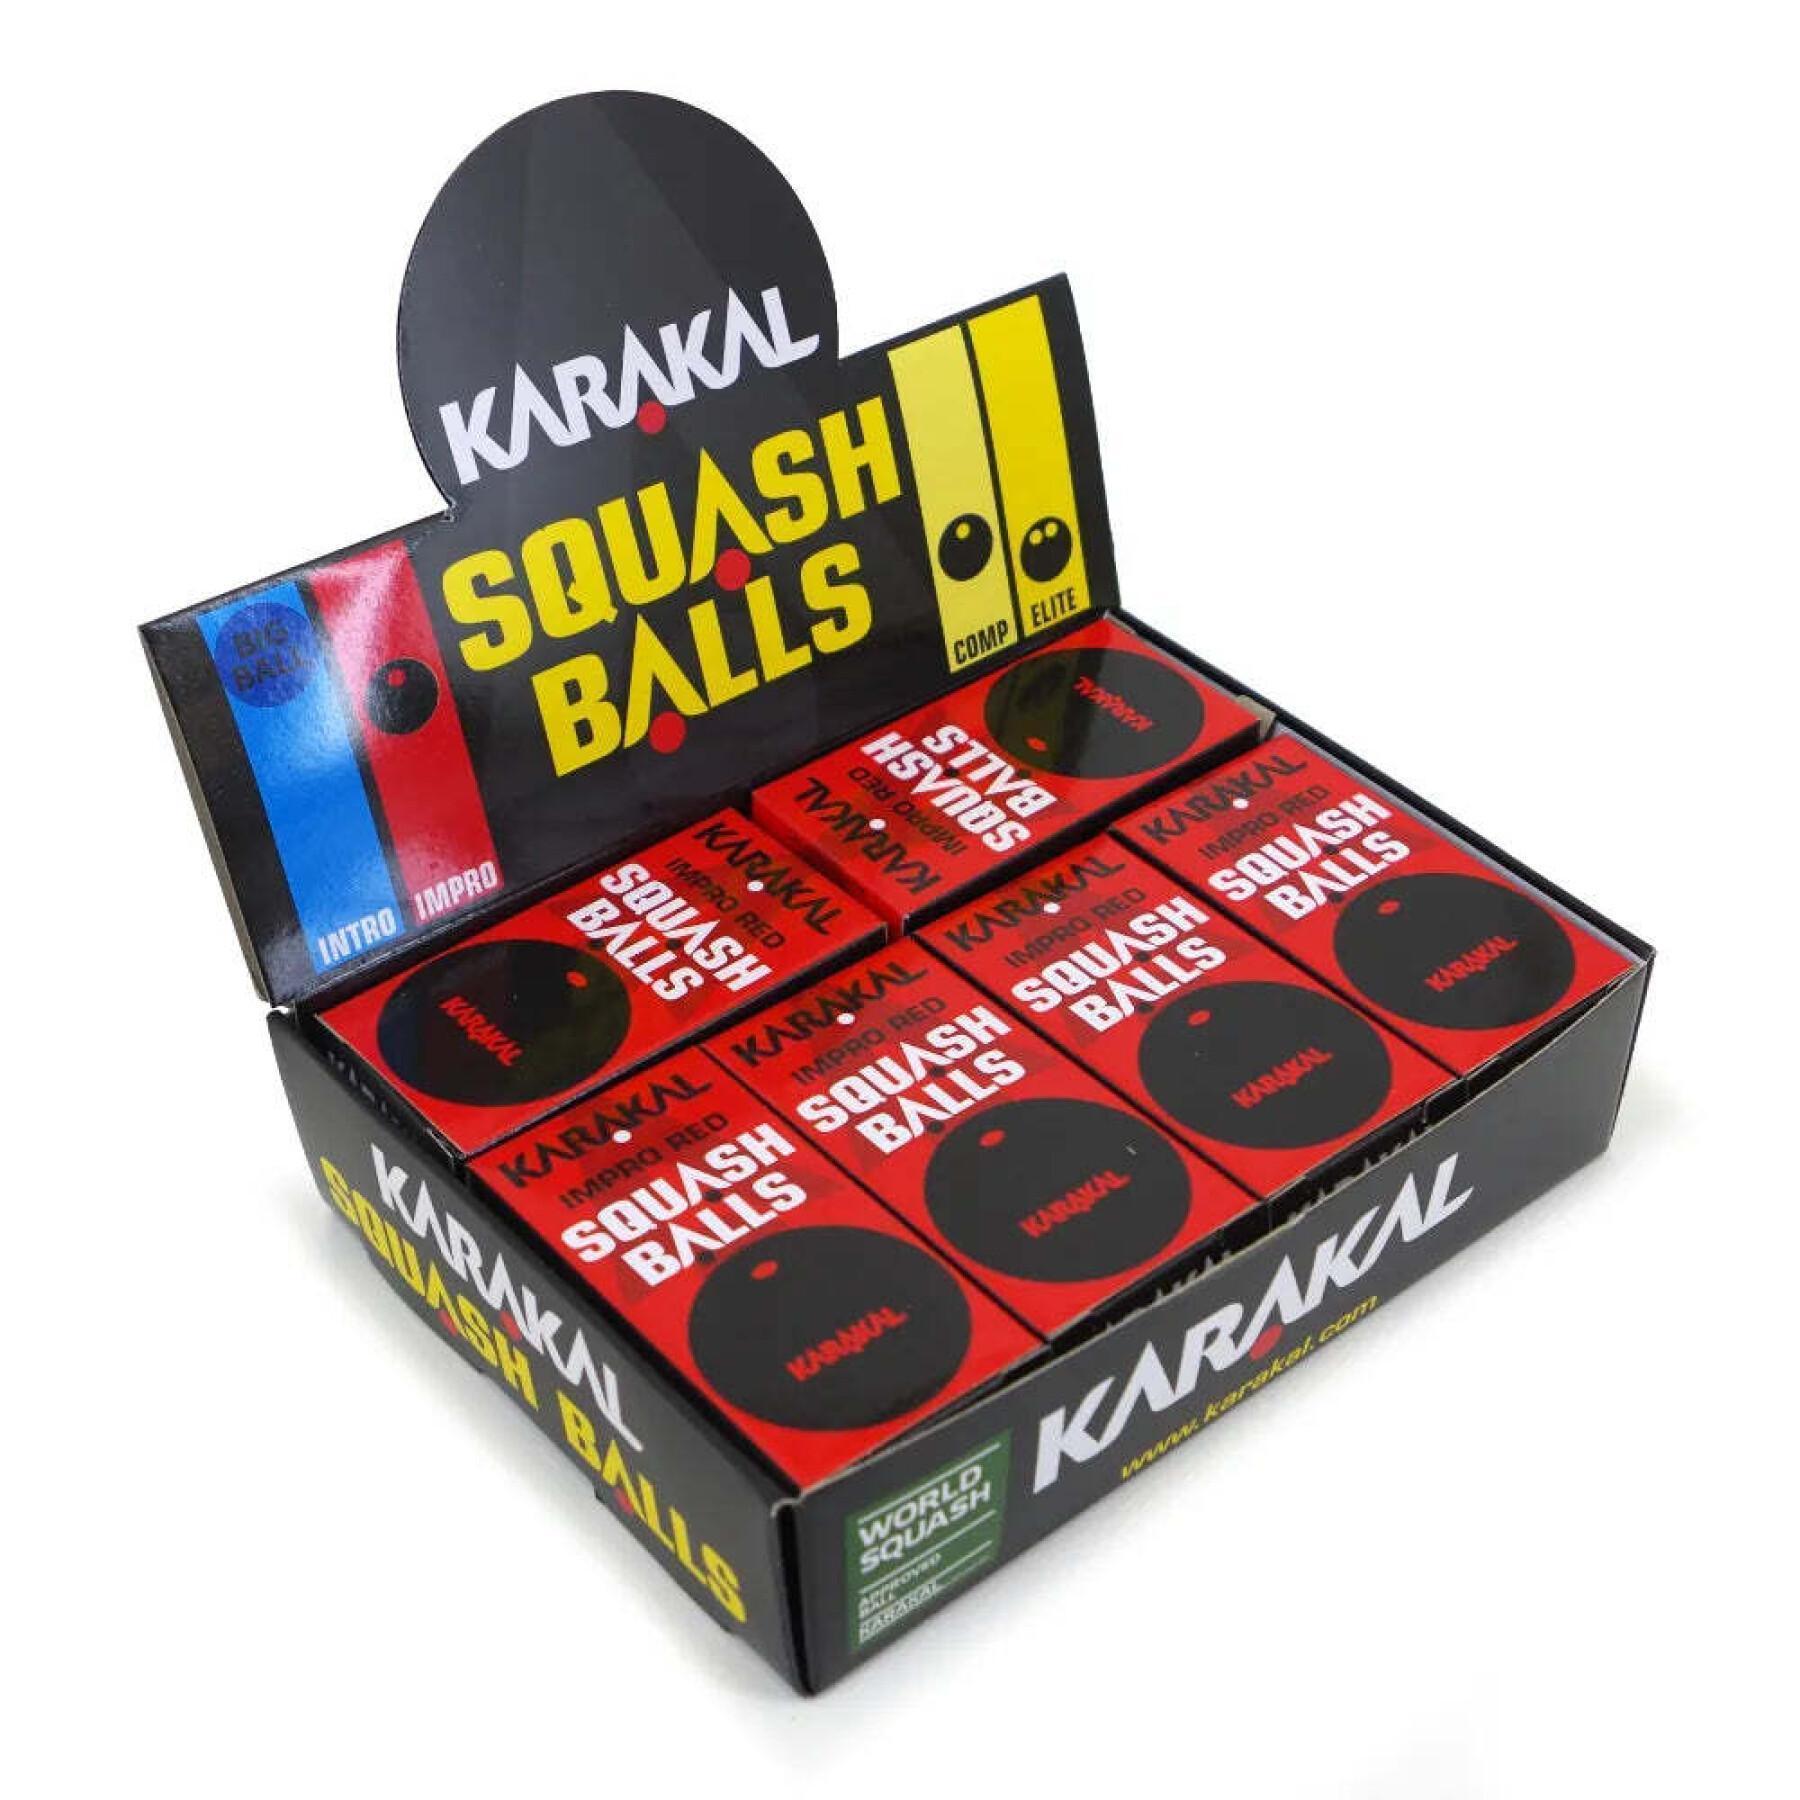 Embalagem de 12 bolas de abóbora em point vermelho Karakal